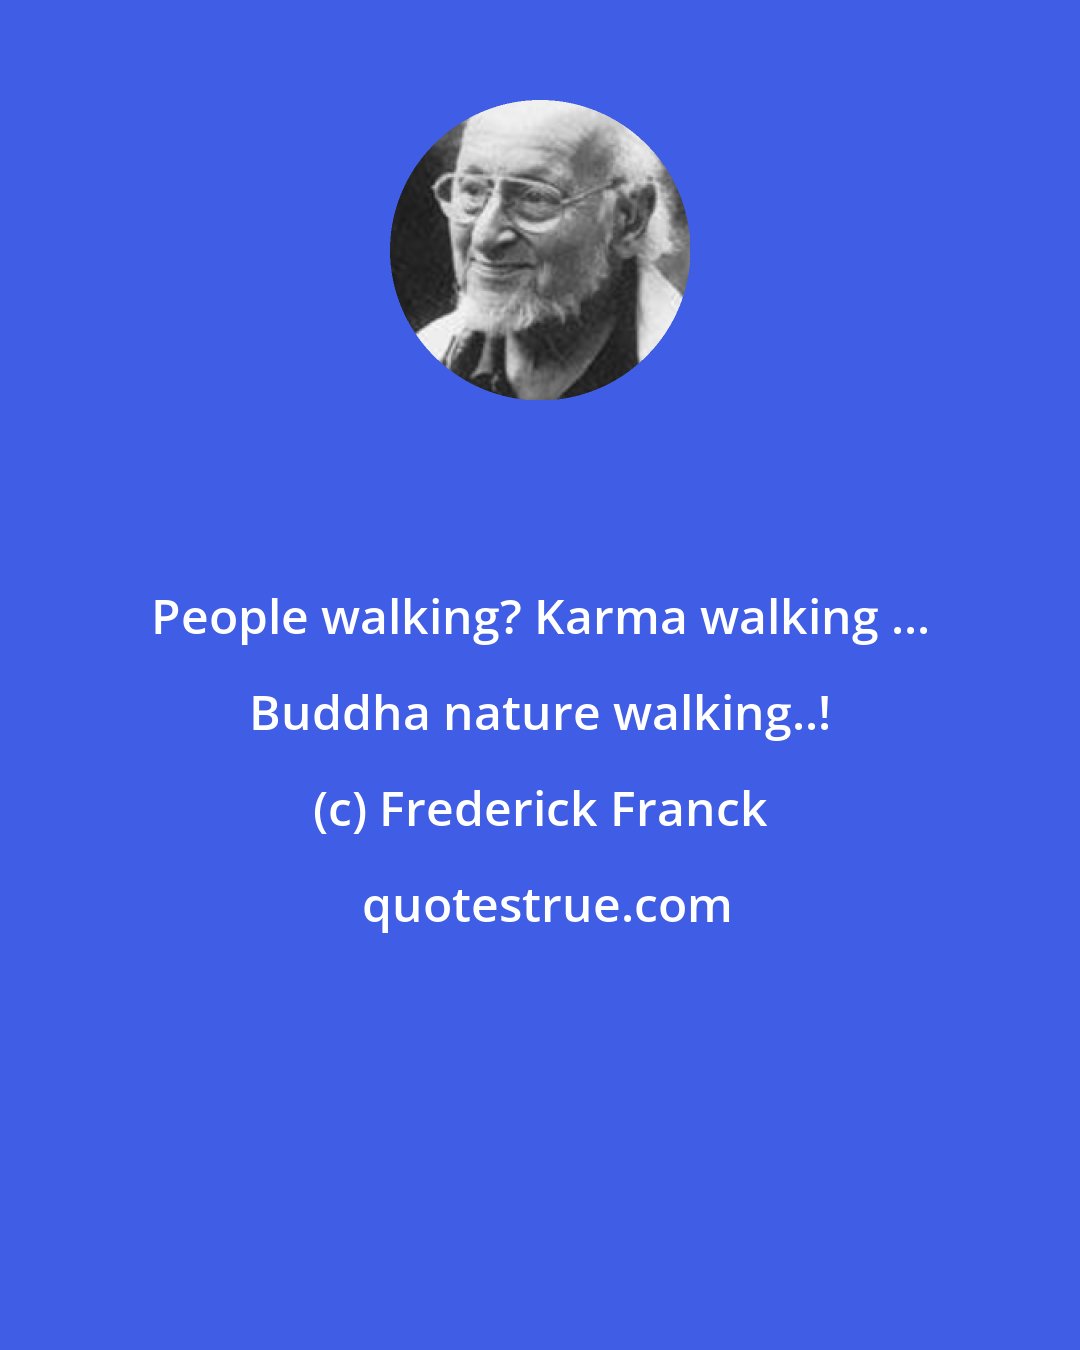 Frederick Franck: People walking? Karma walking ... Buddha nature walking..!